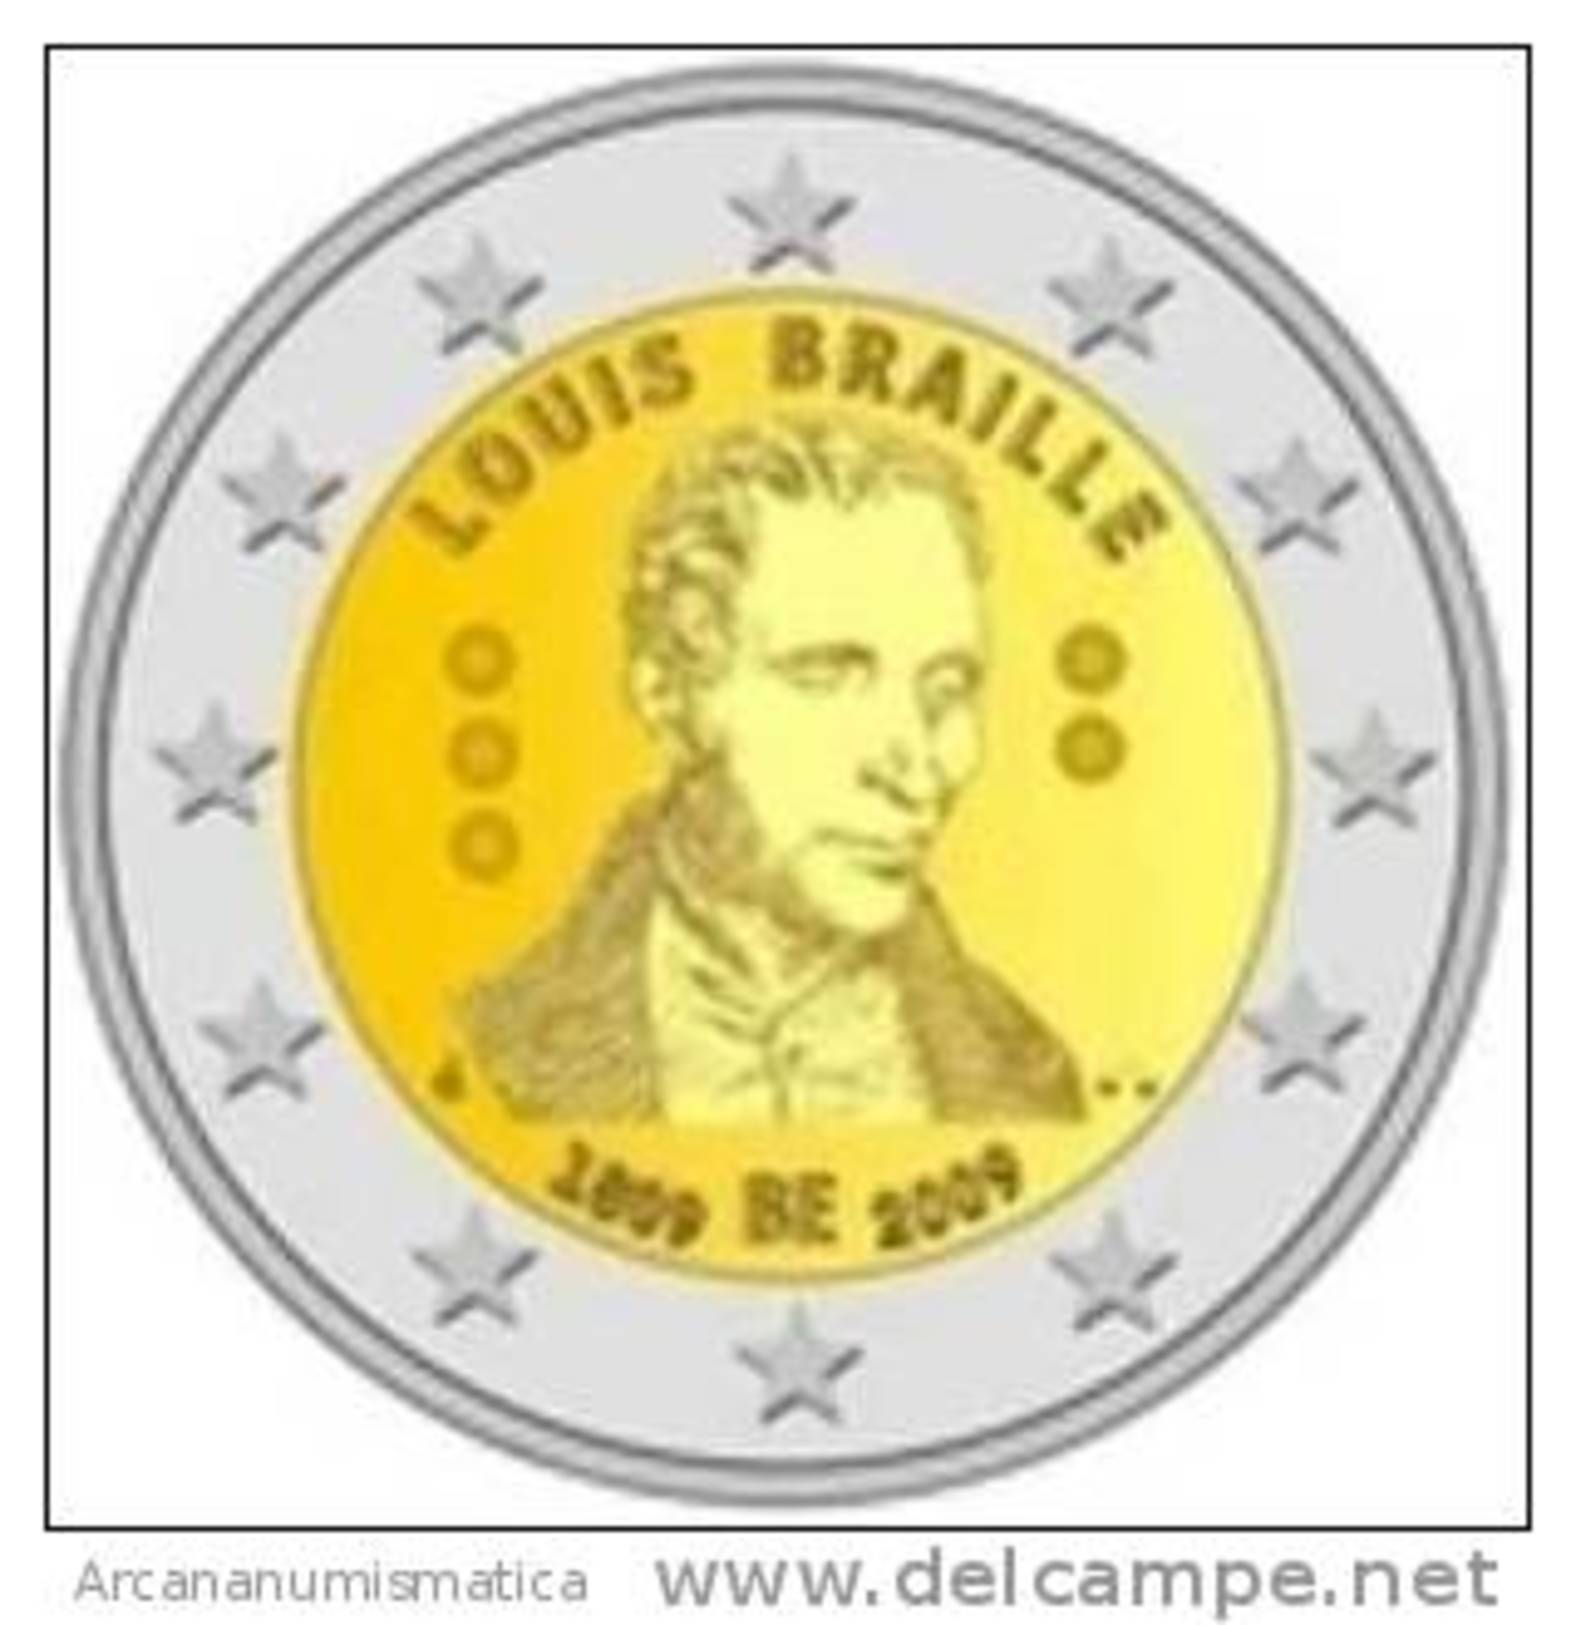 BELGICA  2€  2009  SC/UNC  "LOUIS BRAILLE"  BIMETALICA   DL-7262 - Belgium